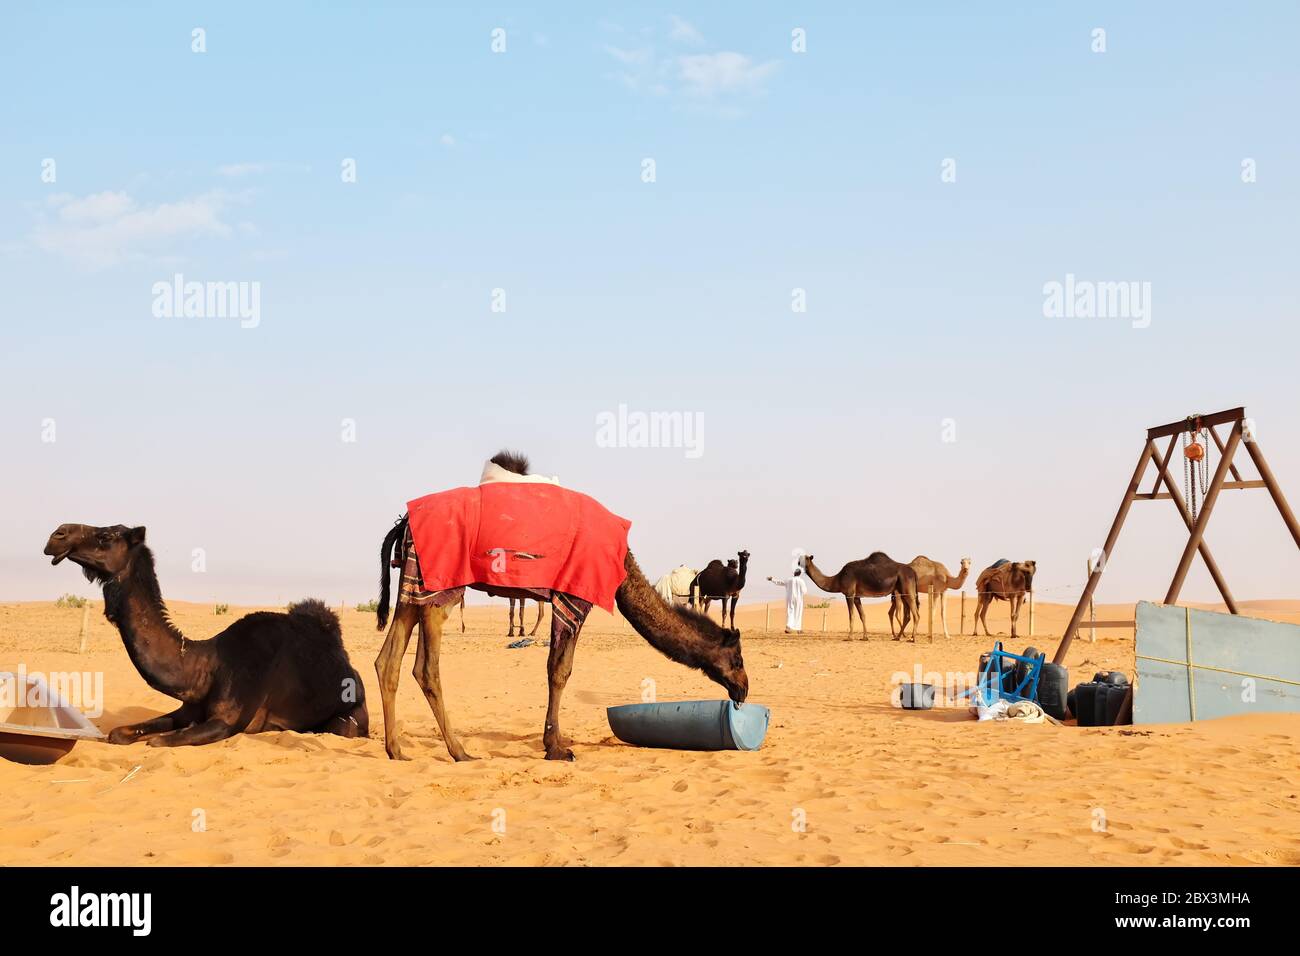 Un uomo e i suoi cammelli nel deserto arabo. Deserto al Dahna, Riyadh, Arabia Saudita. Foto Stock